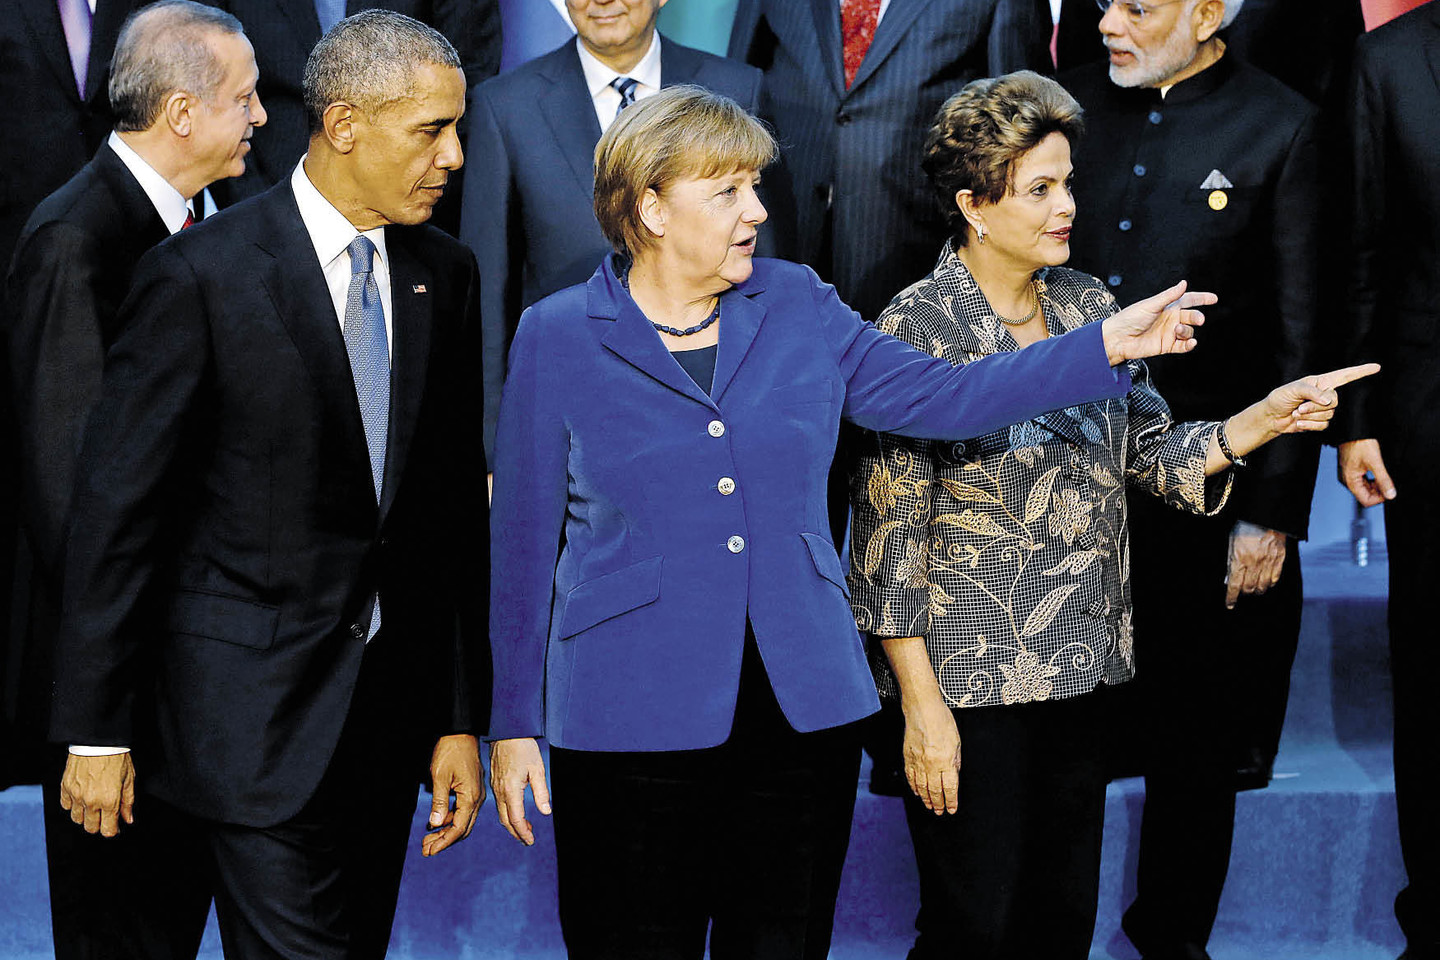 A.Merkel nešioja to paties modelio švarkus su trimis sagomis, bet skirtingų spalvų.